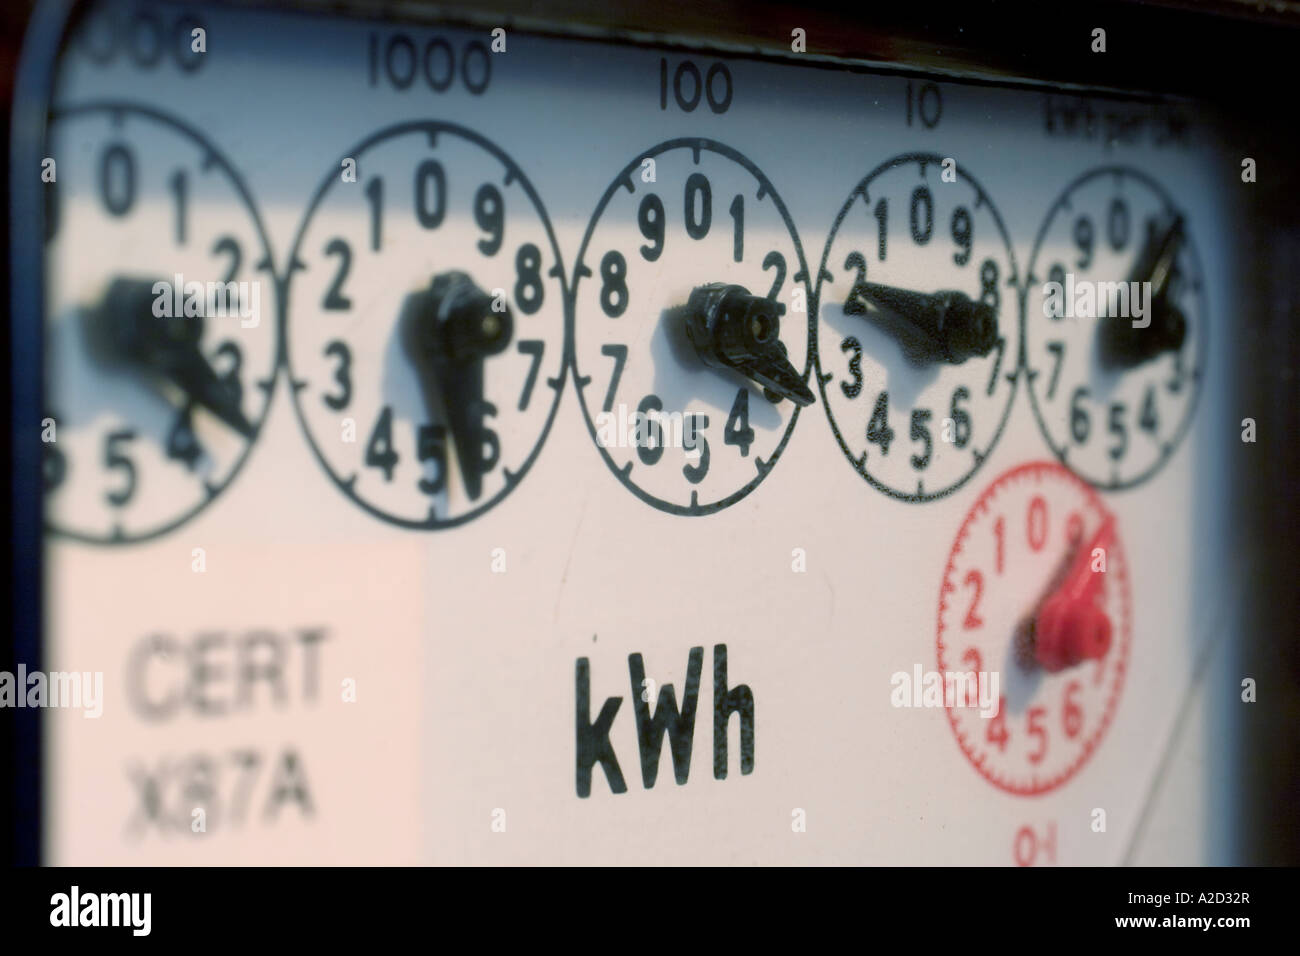 Compone sullo standard dell'elettricità nel Regno Unito del misuratore di kilowatt per ora Foto Stock